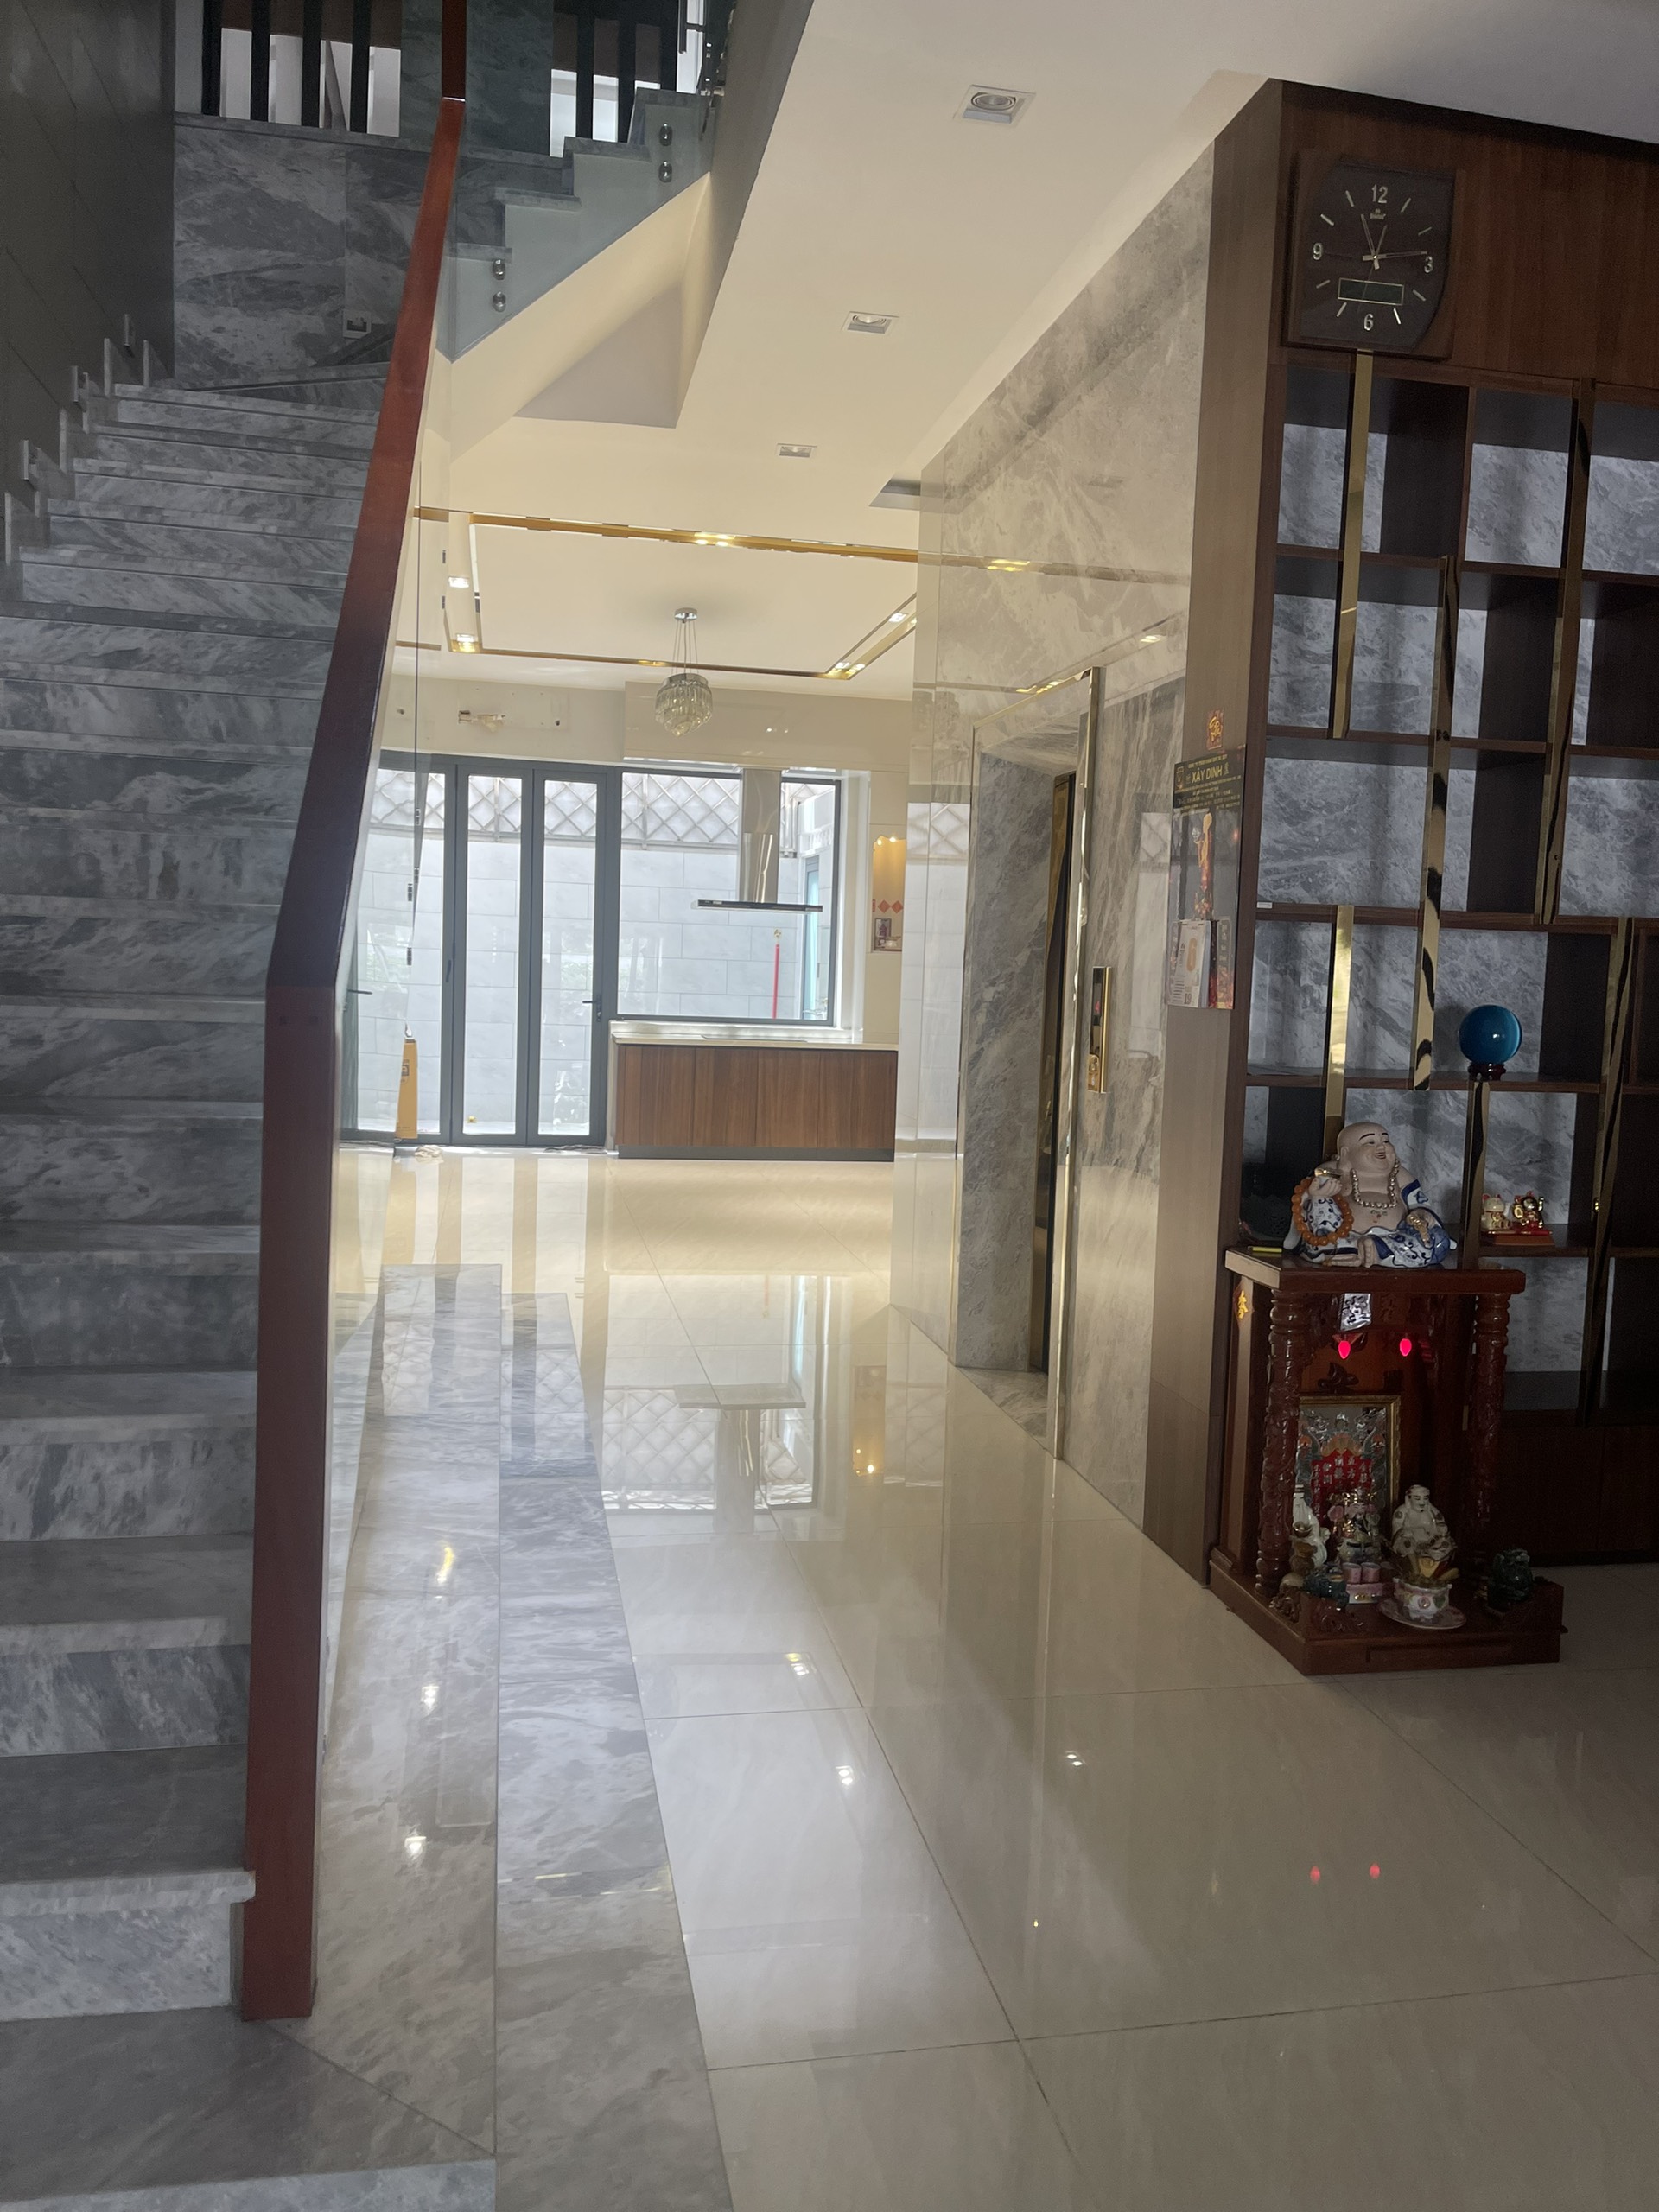 💥Siêu phẩm nhà phố Cityland thương mại khu tiện ích Cityland Gò Vấp có thang máy Chỉ 23 tỷ 💥Địa chỉ số 18 Phan Văn Trị, P10, GòVấp gần Lotte Mart Nguyễn Văn Lượng 🔹Kết cấu 5 tầng và thang máy không gian sống tiện nghi và sang trọng. 🔹Diện tích 5 x 20m, diện tích sử dụng 460m2, 🔹6 phòng ngủ và 5 phòng vệ sinh 🔹Lề rộng và không gian đỗ xe thoải mái 🔹Vị trí đắc địa nằm trên mặt tiền đường khu vực tiện ích chung của toàn dự án, lối vào khu vực hồ bơi và công viên. Mật độ cư dân qua lại luôn đông đúc nhất khu vực 🌿Vài bước chân là đến siêu thị Lotte Mart, trường học quốc tế Việt Úc, Vincom, ngân hàng và cửa hàng ăn uống, mua sắm. 🌿Di chuyển đến trung tâm Thành Phố, sân bay Tân Sơn Nhất, bến xe Miền Đông/TP Thủ Đức dễ dàng. Không chỉ vậy, an ninh bảo vệ 24/24, công viên cây xanh tươi mát, hồ bơi và phòng Gym. ☎Ngoài ra : là cư dân lâu năm tại đây tôi được ký gửi nhiều căn hộ cho thuê và bán - căn đẹp, giá tốt nhất thị trường : 1pn, 2pn, 3pn, shophouse, nhà thương mại, căn hộ sân vườn ☎liên hệ ngày để được báo giá đầy đủ ko phát sinh bất cứ chi phí nào khác ☎Liên hệ Số điện thoại 0977 954. 529 (ZaloViber) - Nguyên Vũ